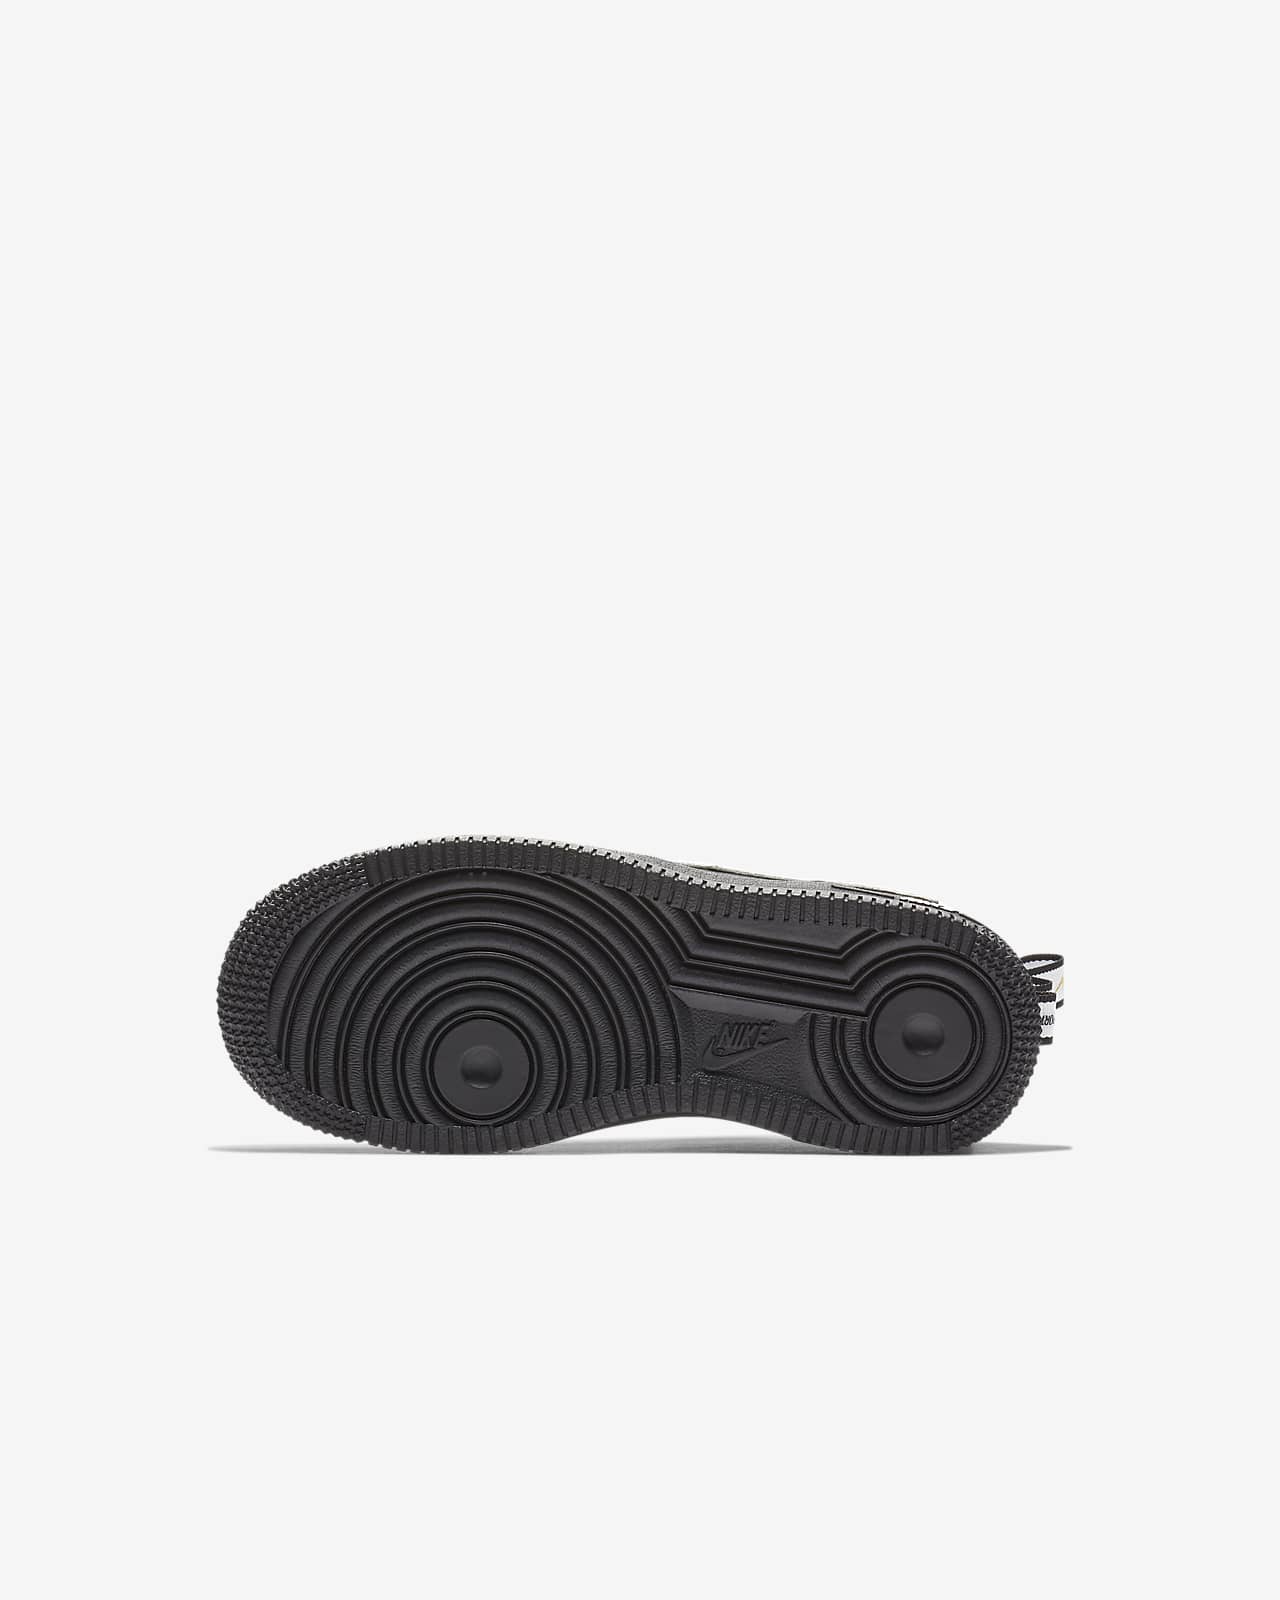 Nike Force 1 LV8 Utility Little Kids' Shoe Size 1Y (Black)